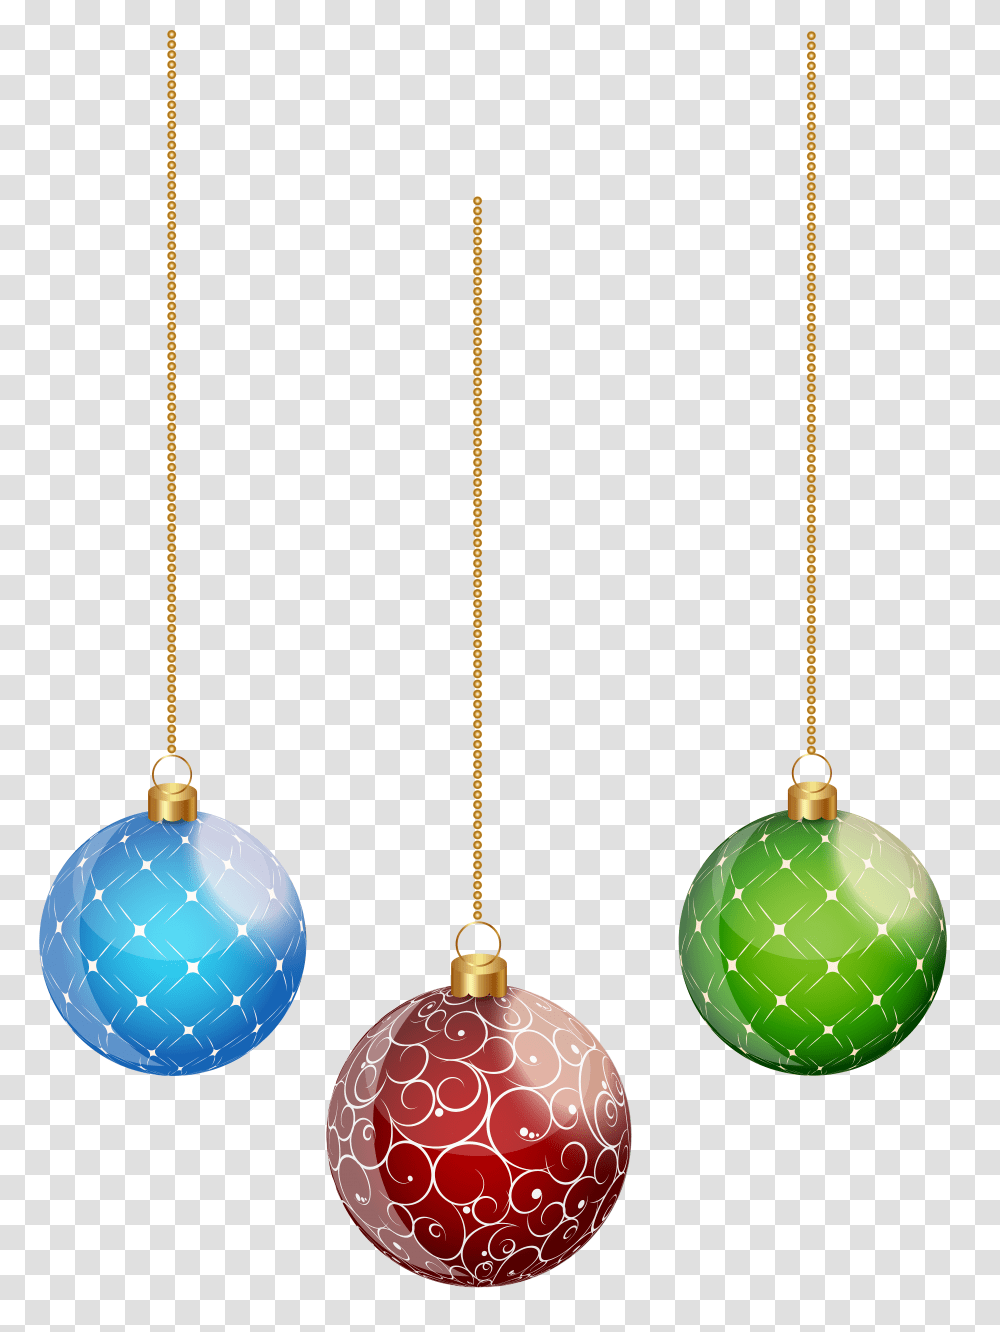 Hanging Christmas Ornaments Hanging Christmas Balls Hanging Christmas Balls Transparent Png